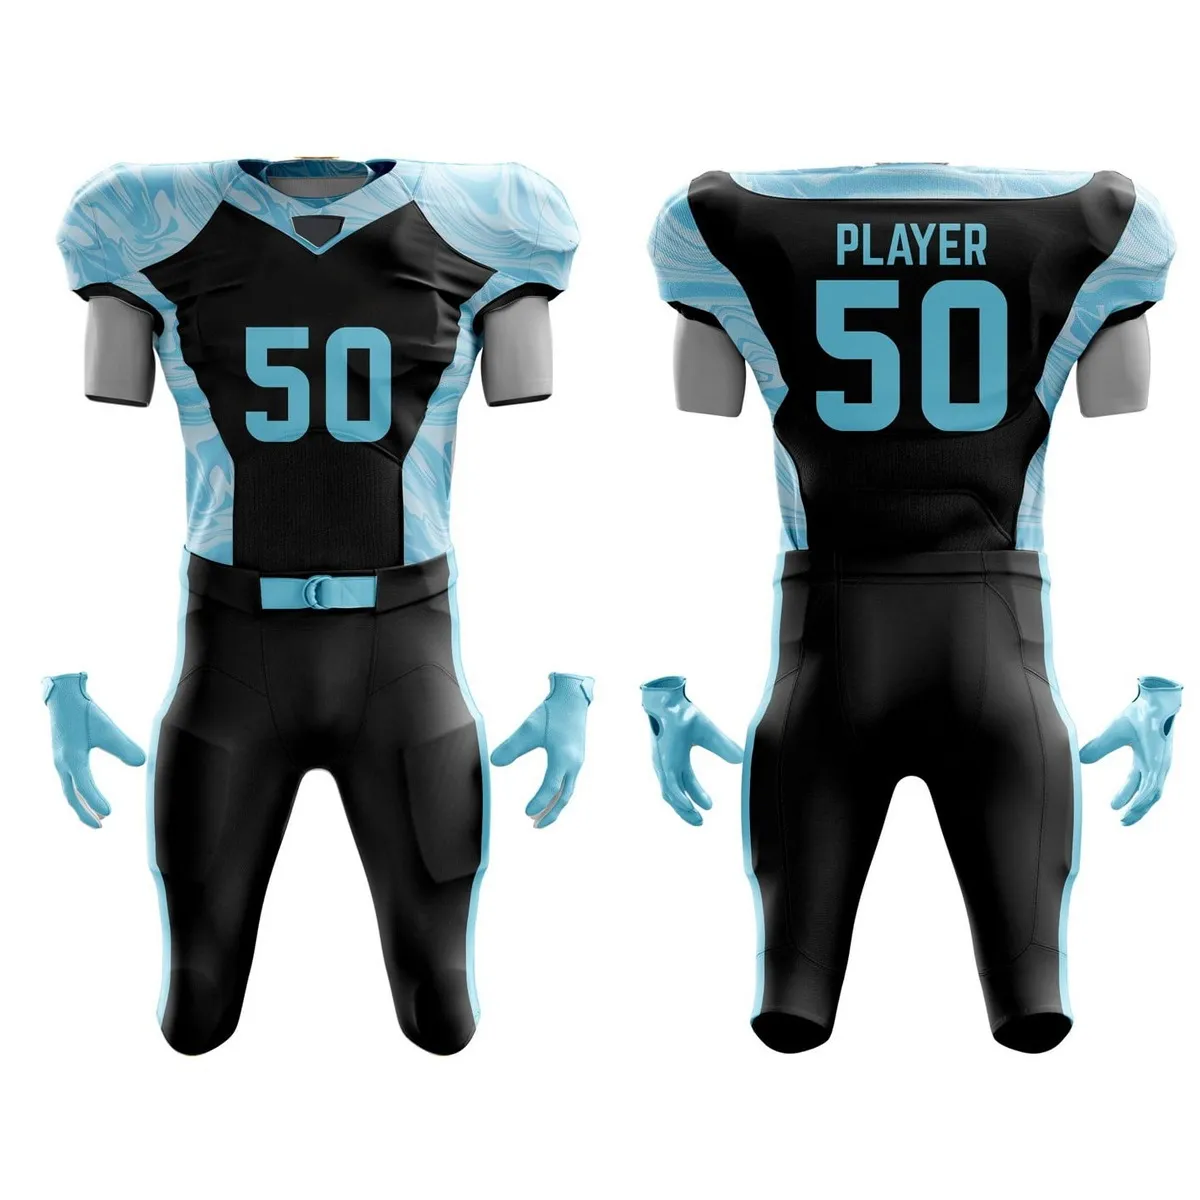 Uniforme de futebol americano por atacado, novo uniforme de futebol americano de tamanho personalizado, uniforme de futebol americano mais vendido